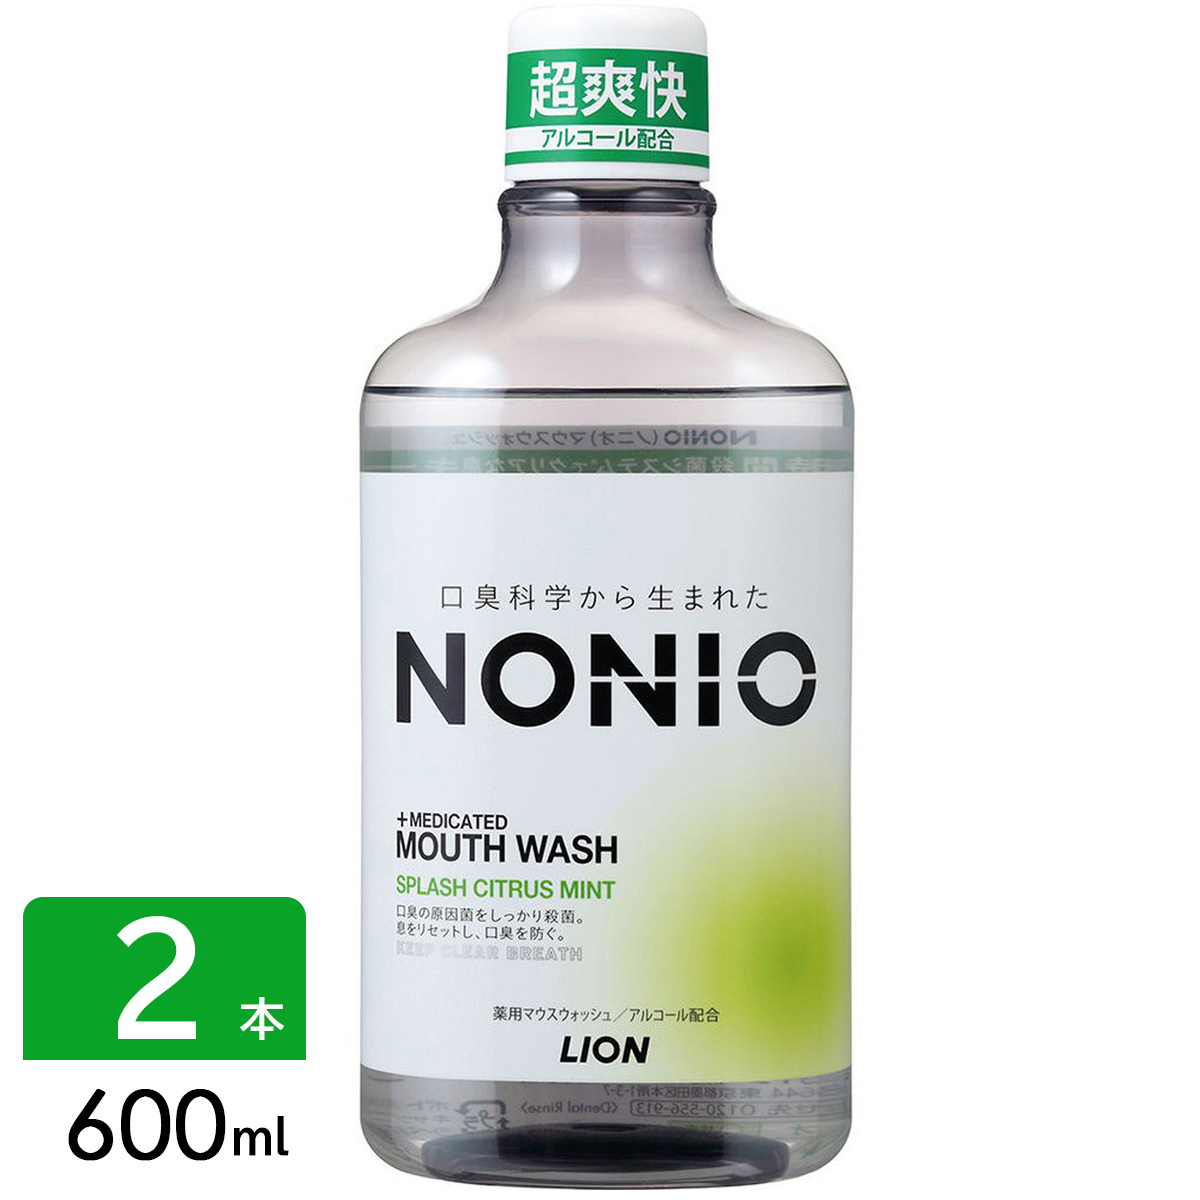 NONIO ノニオ マウスウォッシュ 洗口液 アルコール スプシトラスミント 600ml 2本